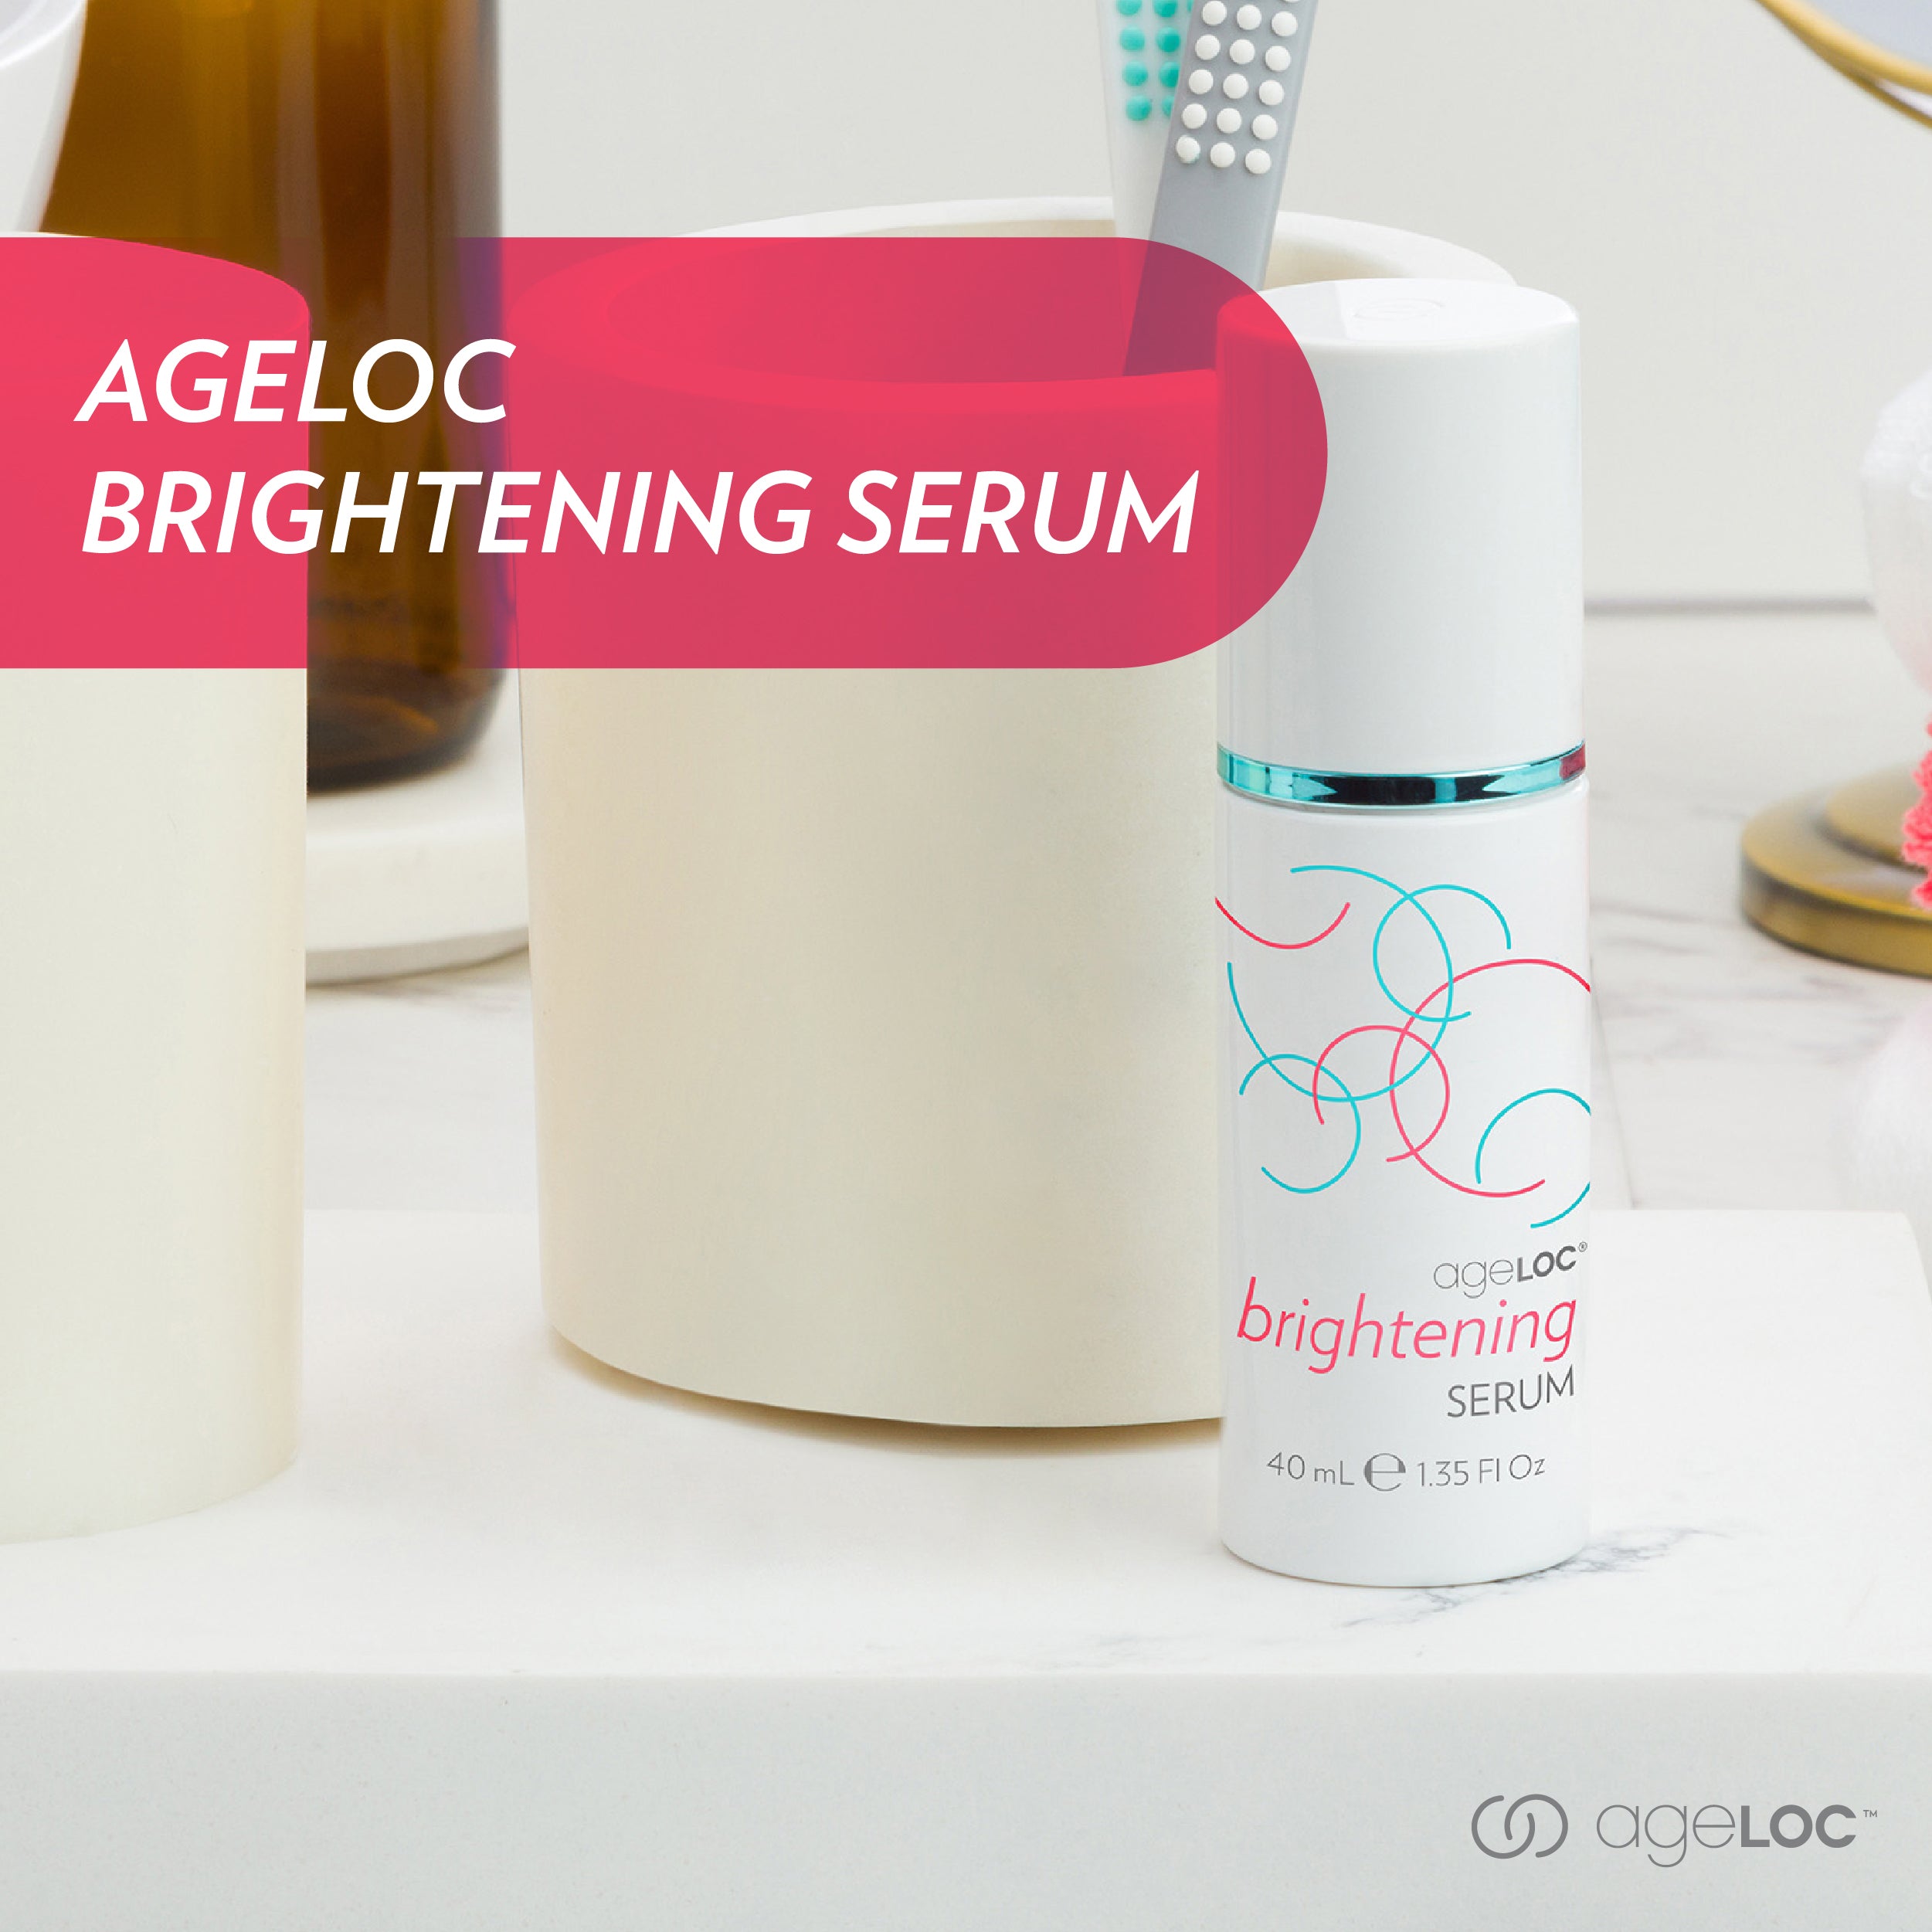 AgeLOC Brightening Serum